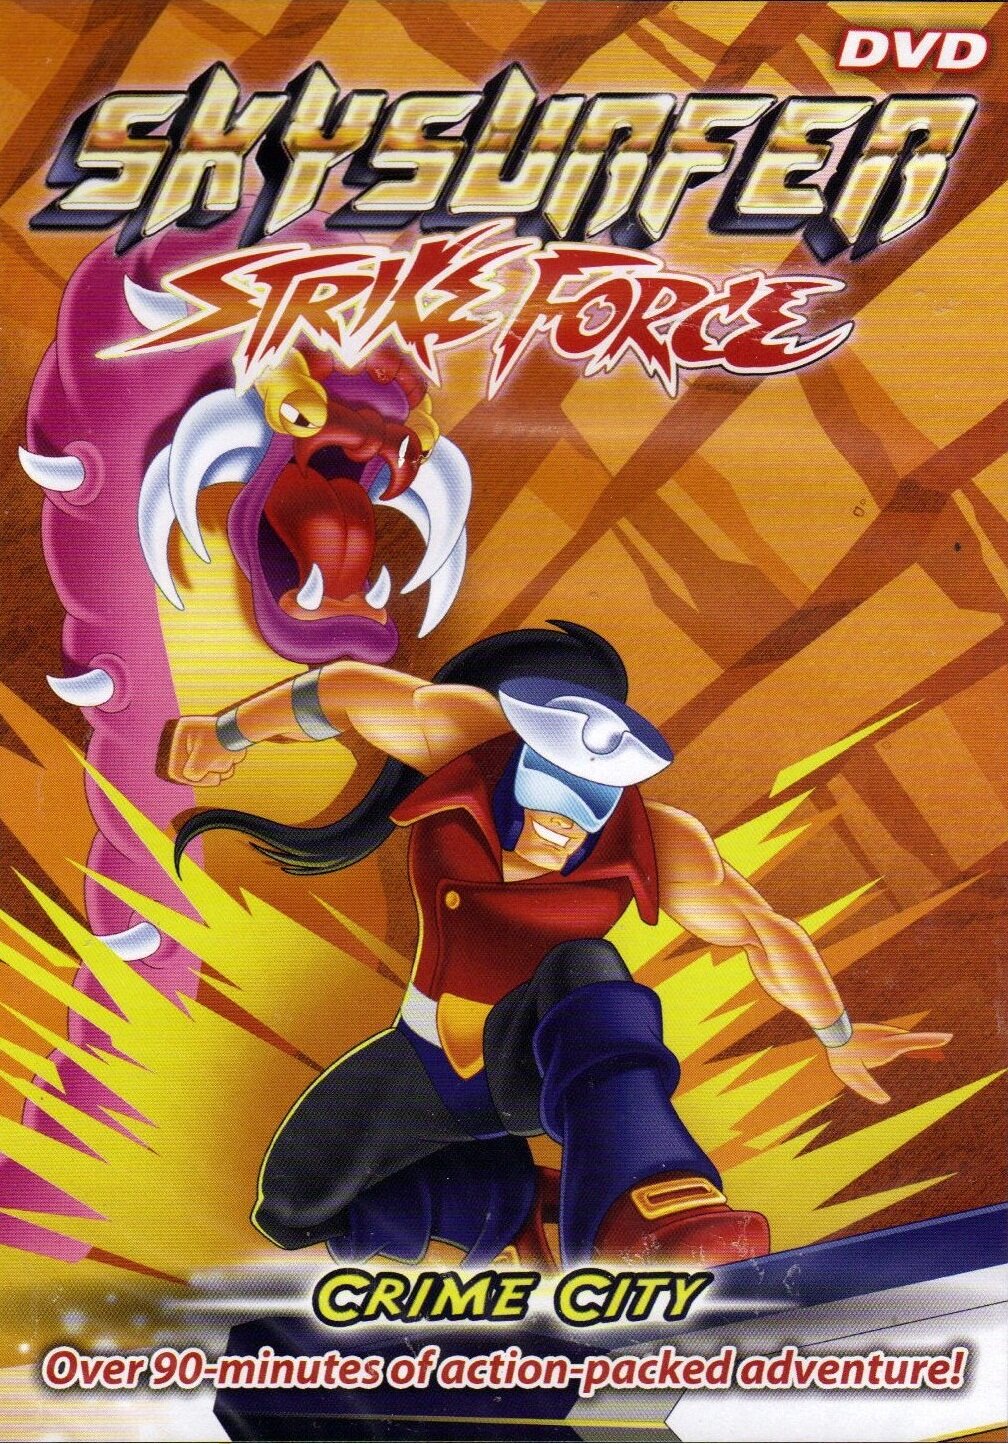  Непобедимые Скайеры | Skysurfer Strike Force (1995) 